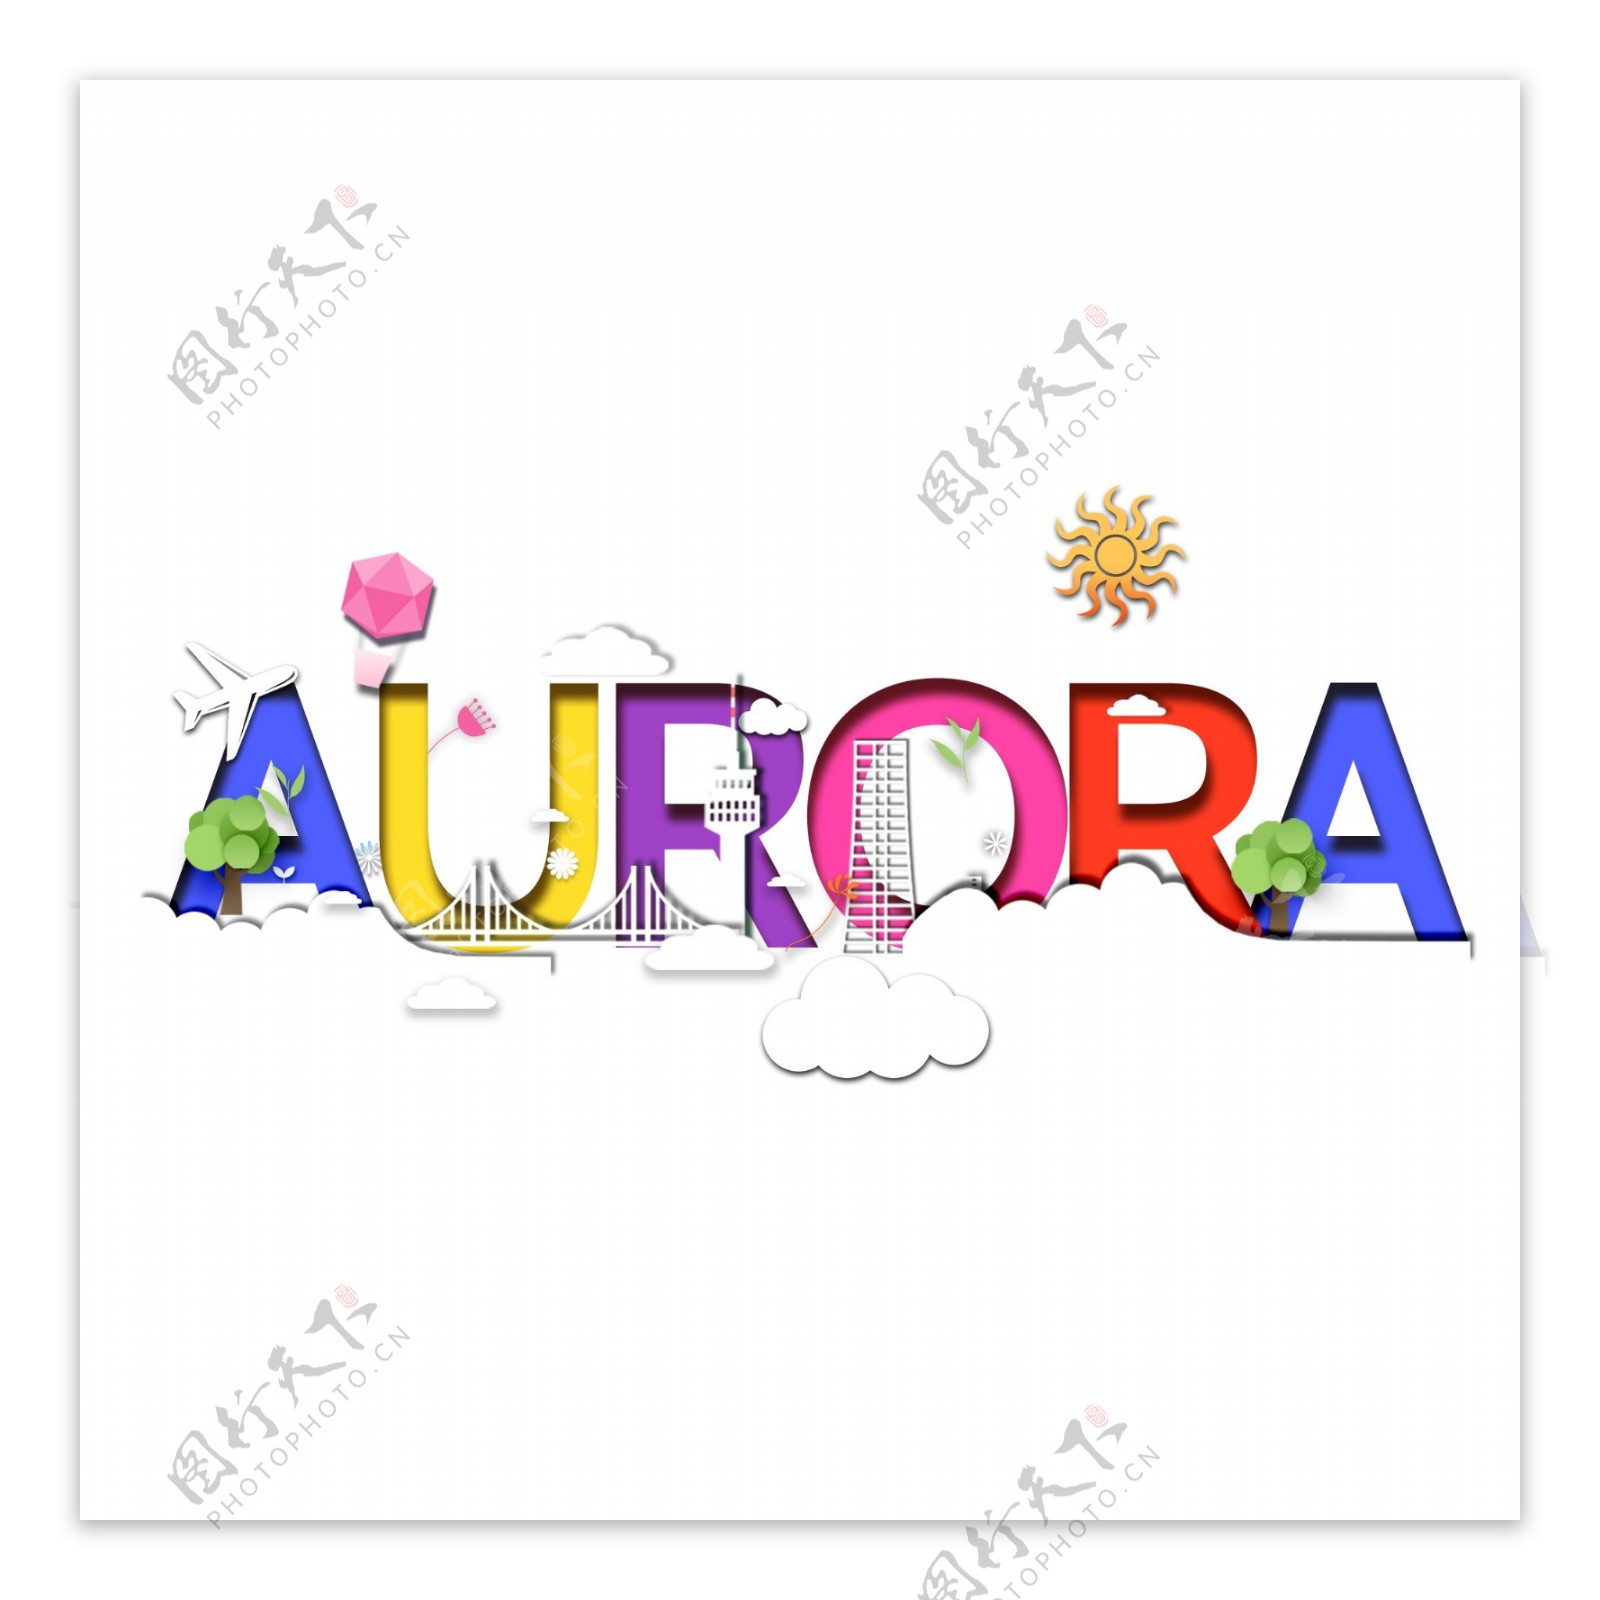 印象剪纸风Aurora极光设计元素